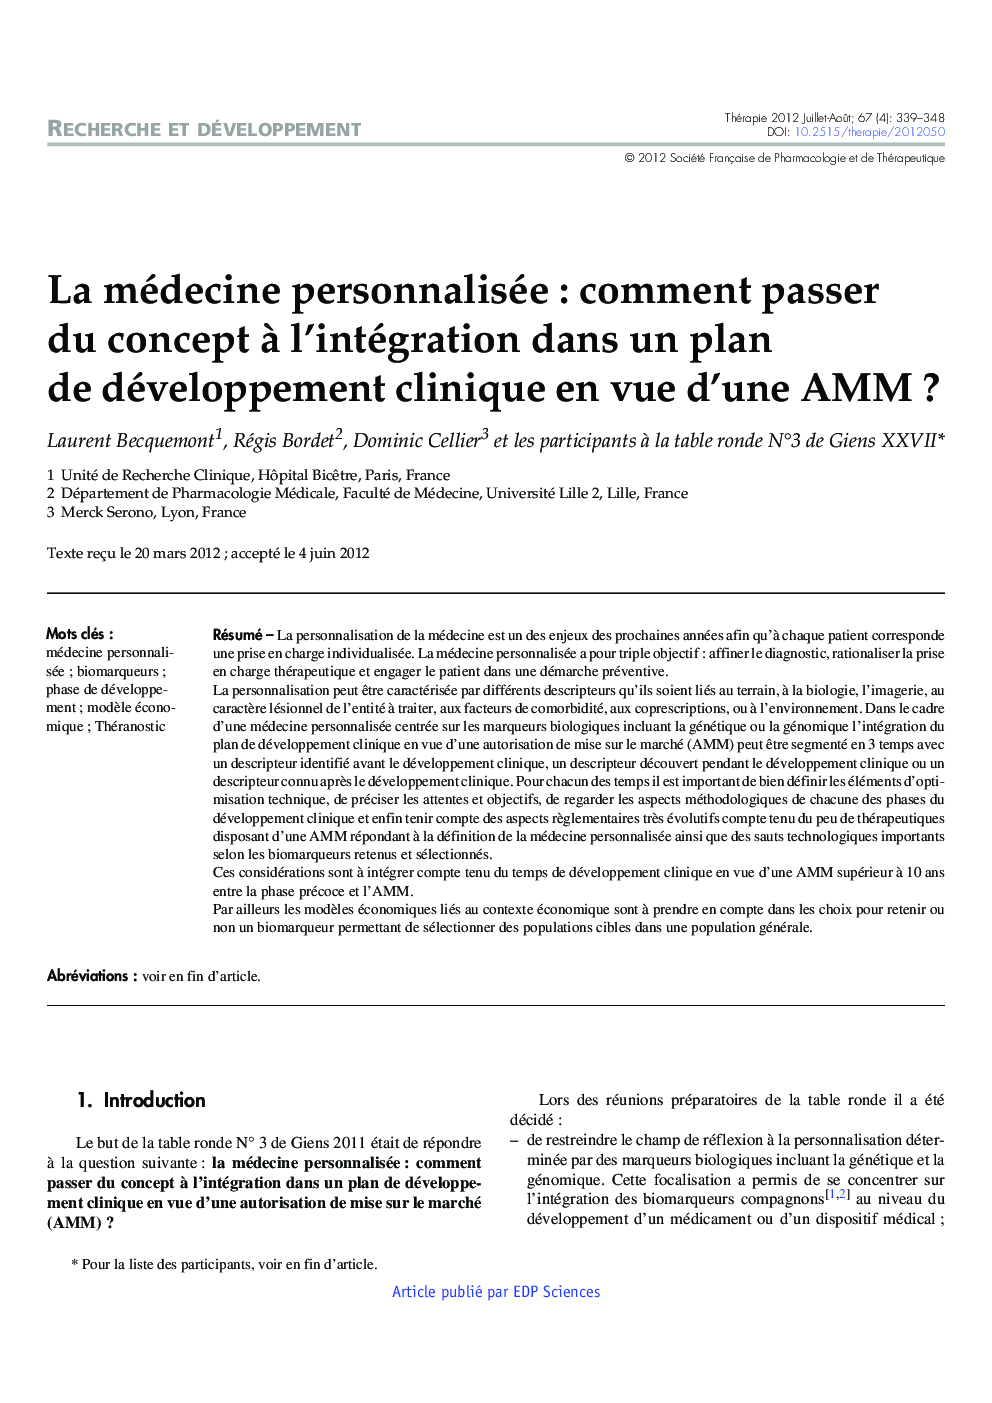 La médecine personnalisée : comment passer du concept Ã  l'intégration dans un plan de développement clinique en vue d'une AMM ?